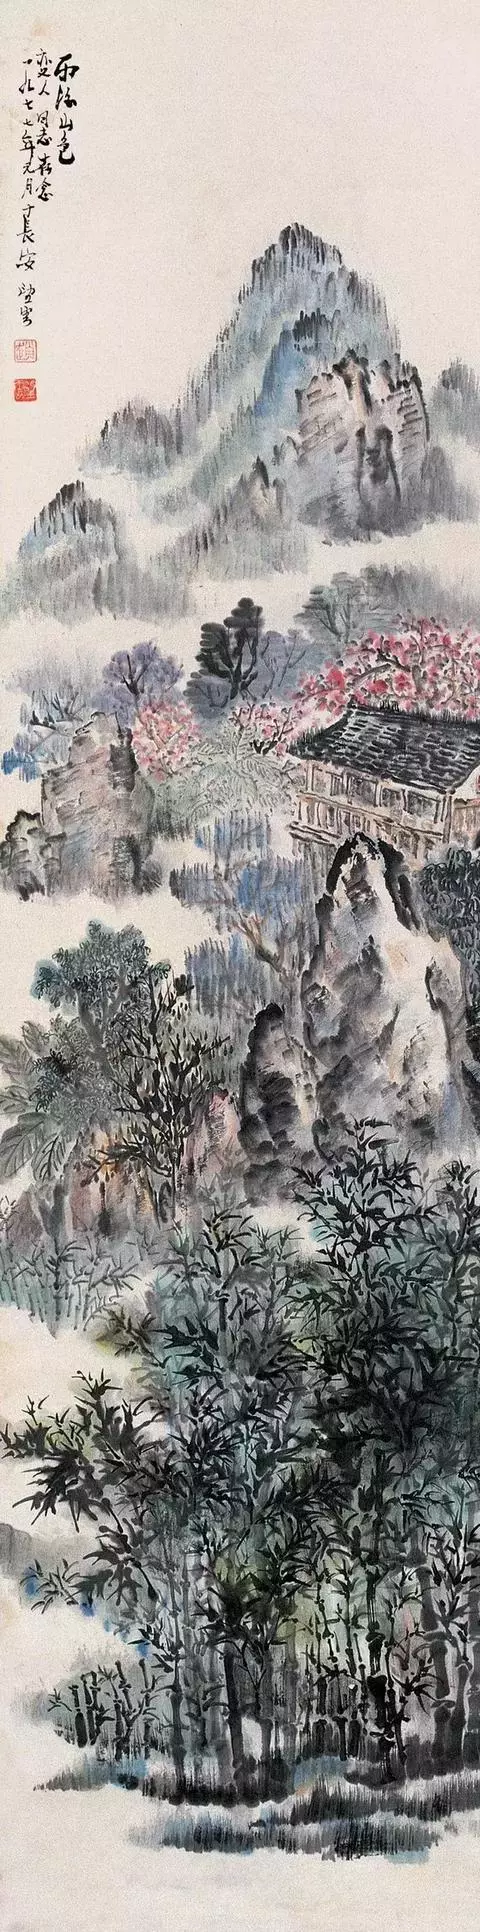 "长安画派"的创始人赵望云国画作品